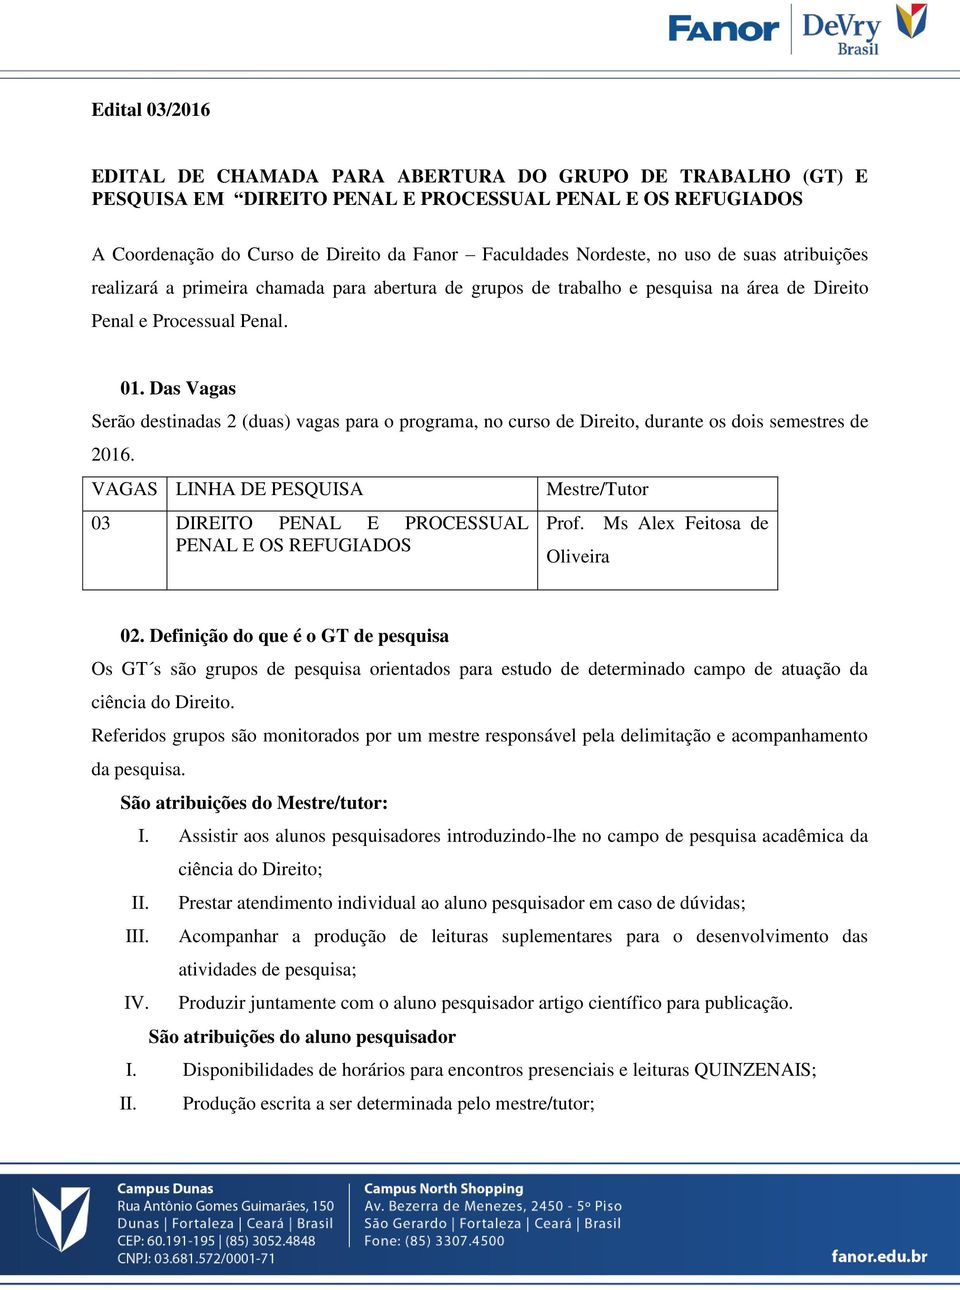 Das Vagas Serão destinadas 2 (duas) vagas para o programa, no curso de Direito, durante os dois semestres de 2016.